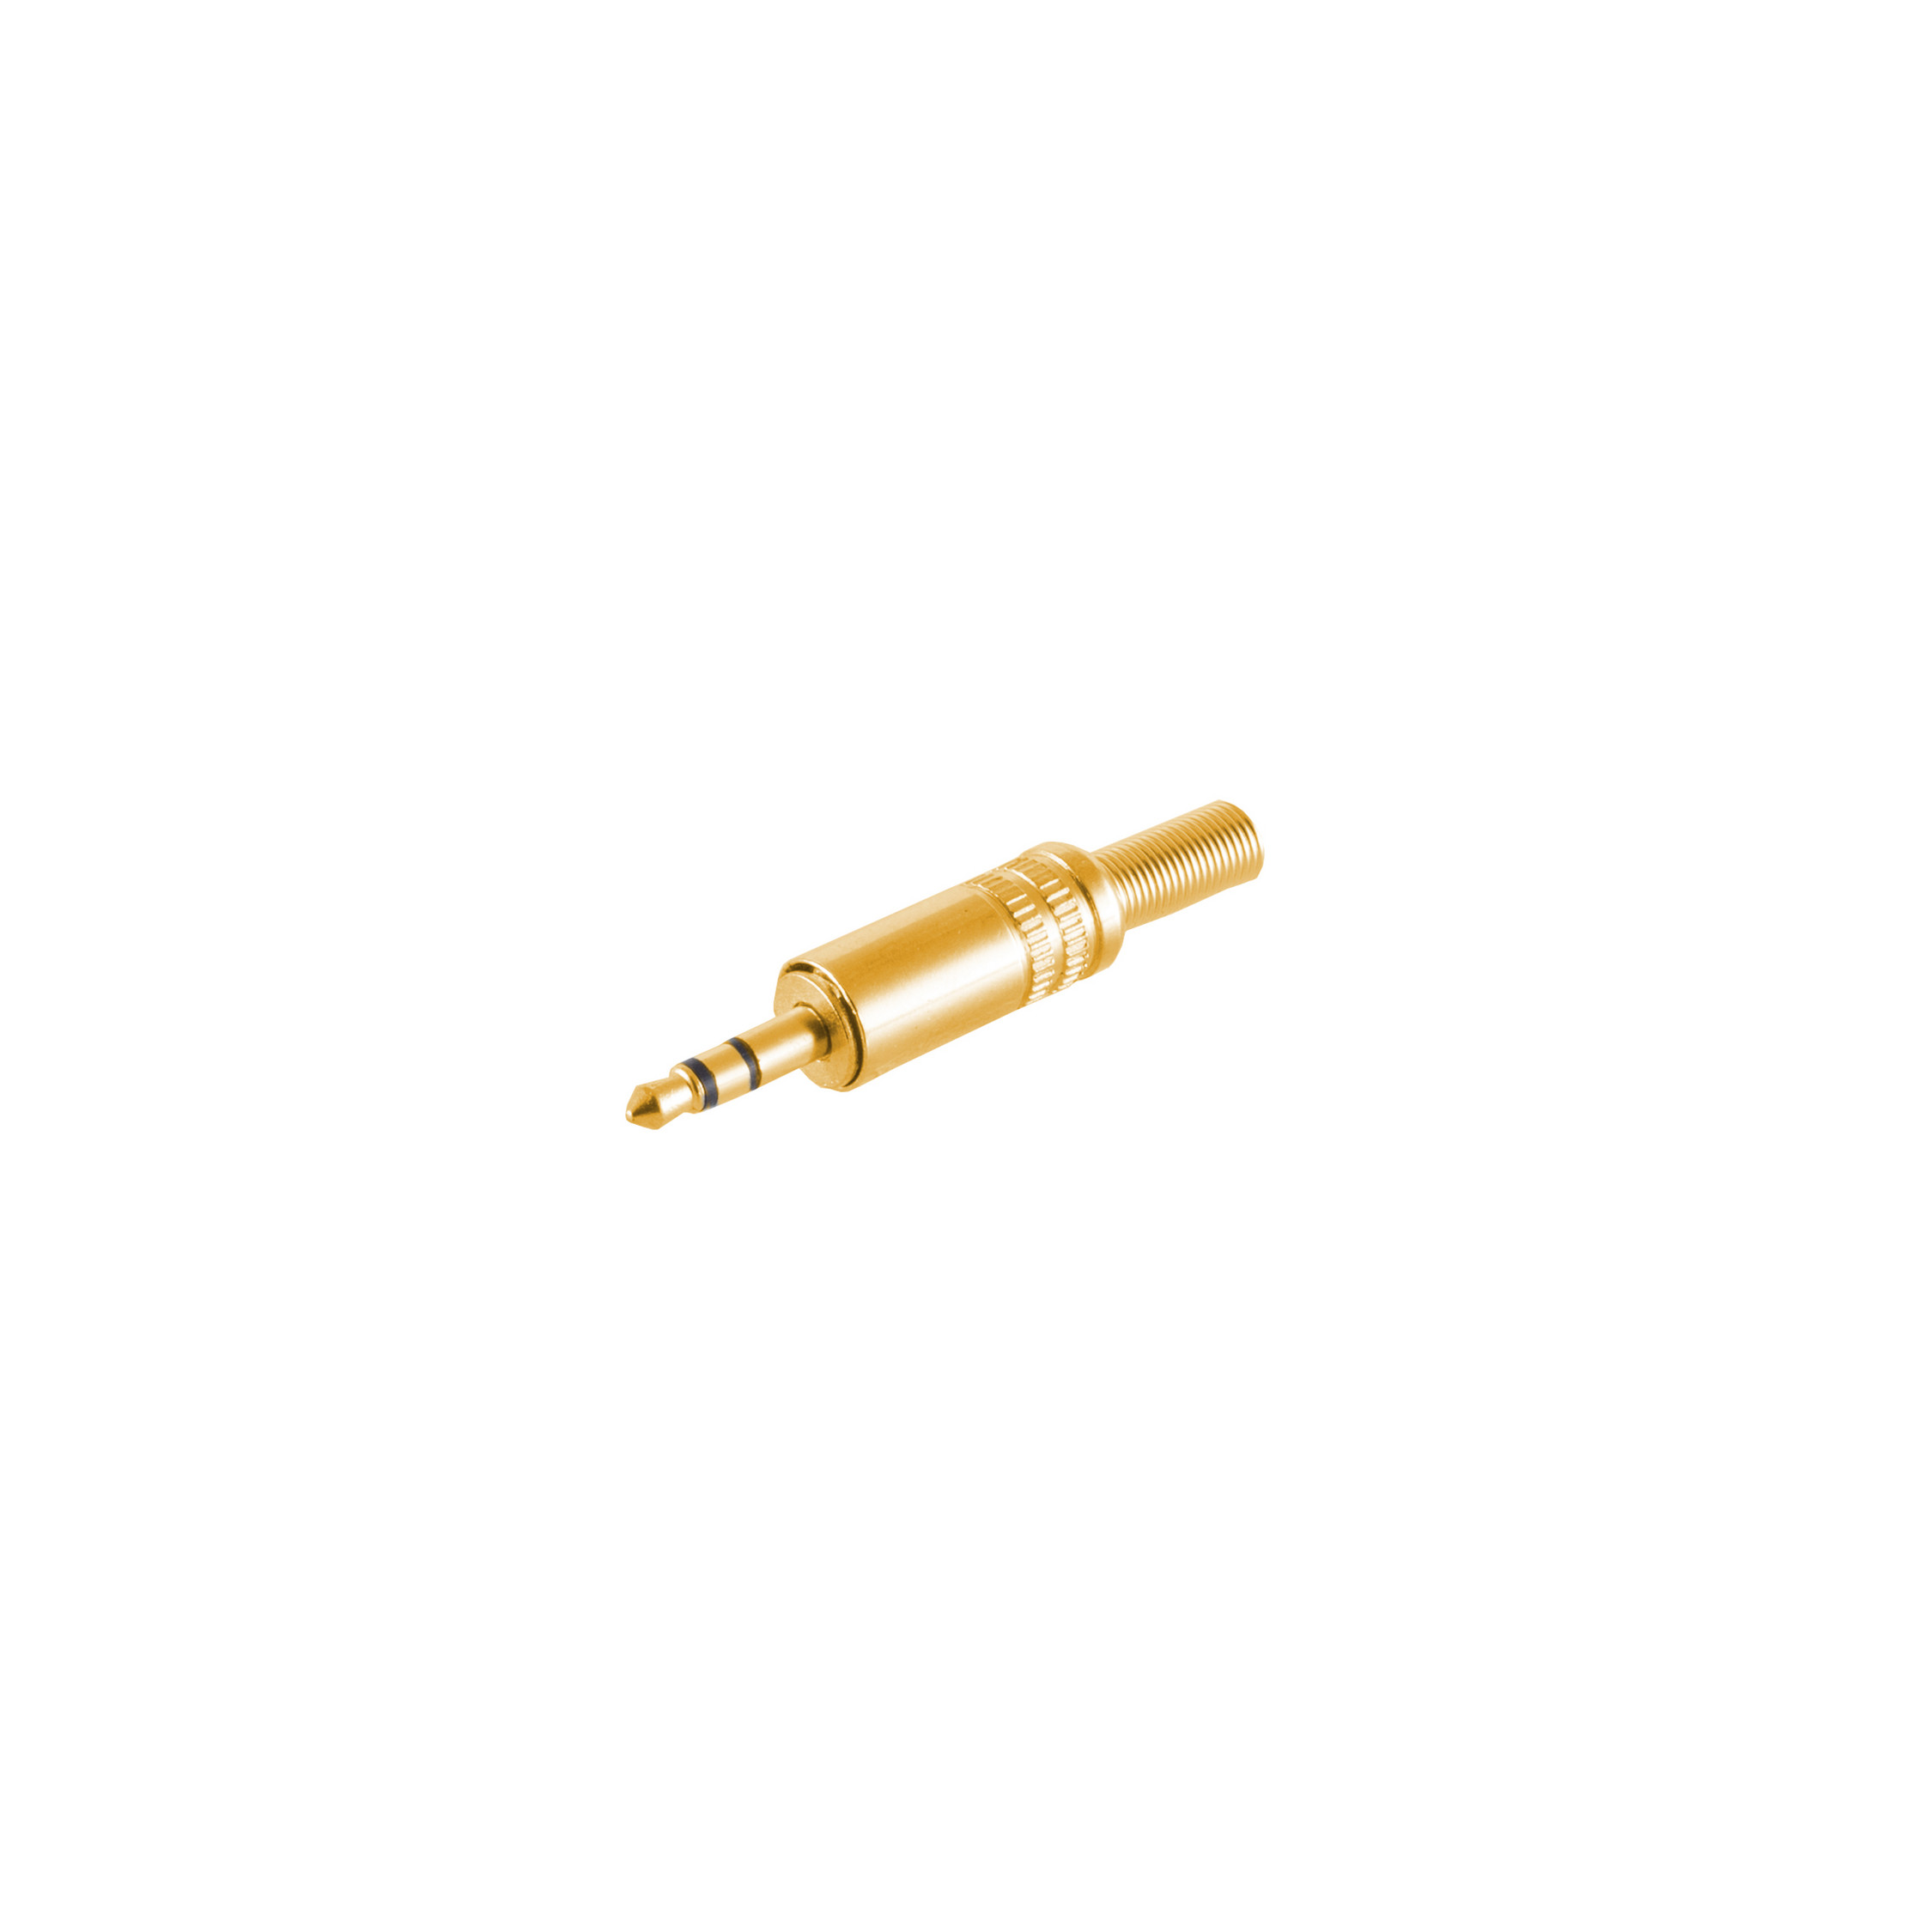 S/CONN MAXIMUM Klinkenstecker Klinke vergoldet CONNECTIVITY 3,5mm, Metall Stereo